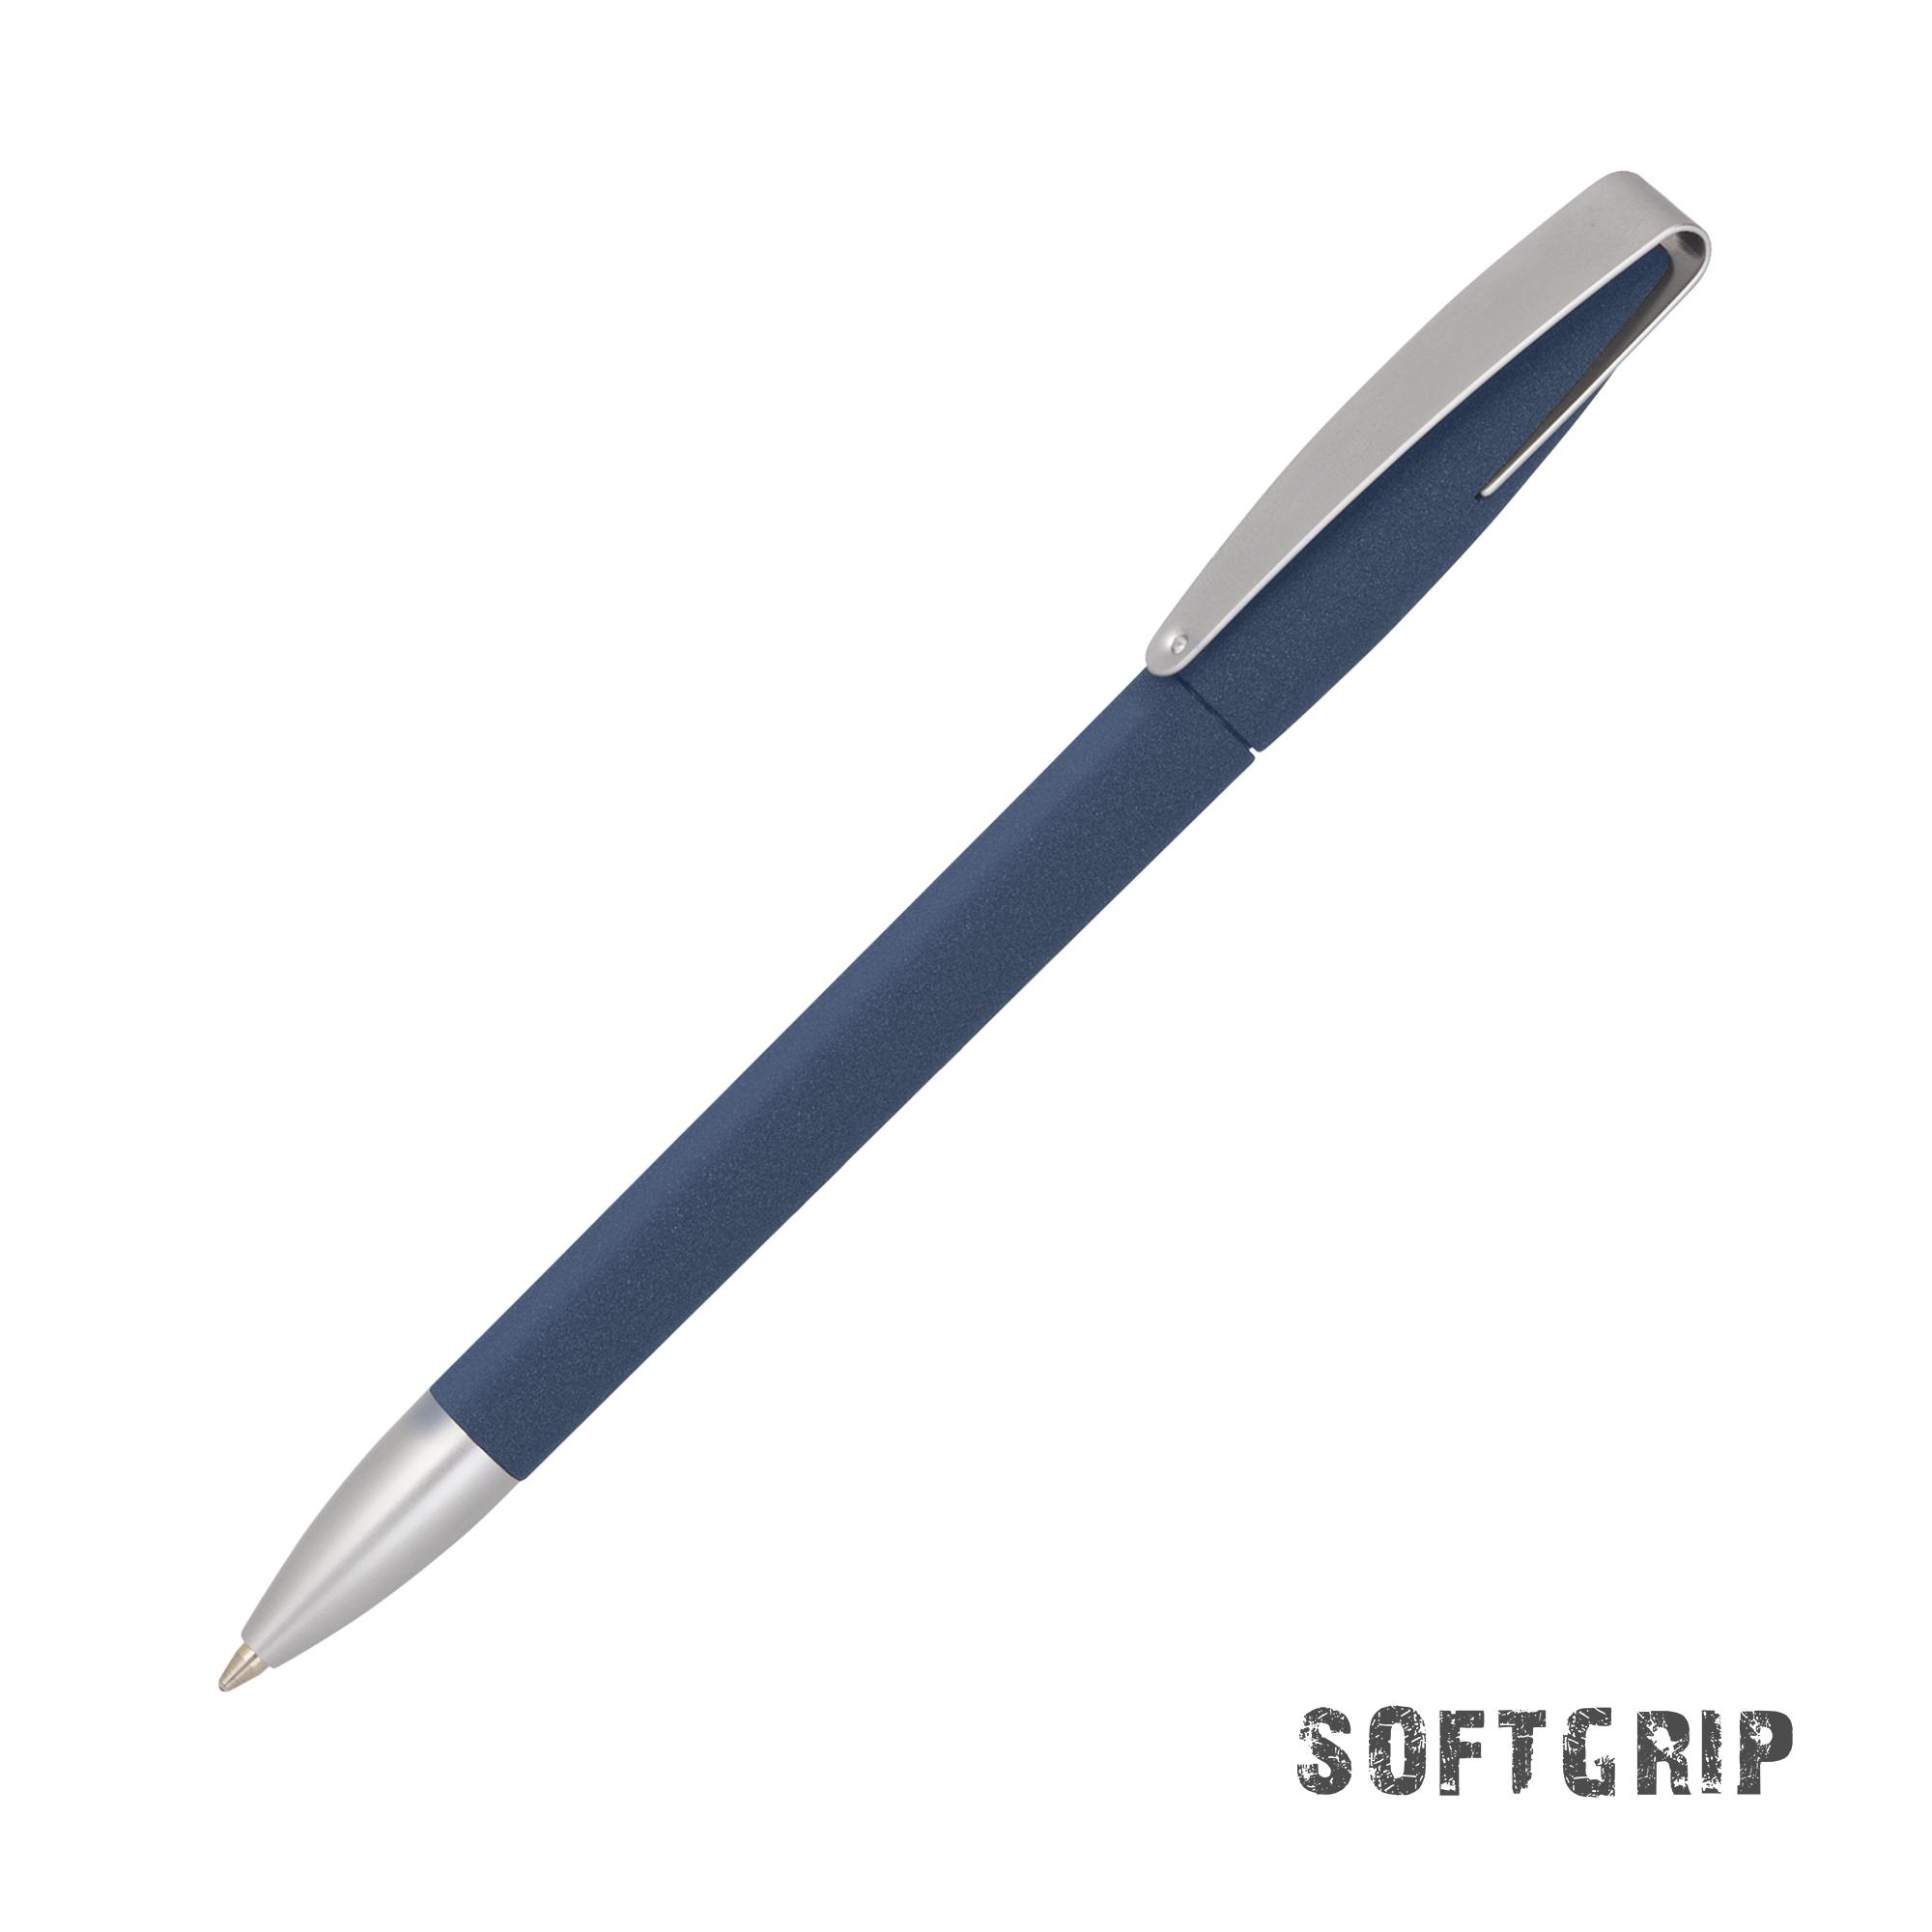 Ручка шариковая COBRA SOFTGRIP MM, цвет черный - купить оптом